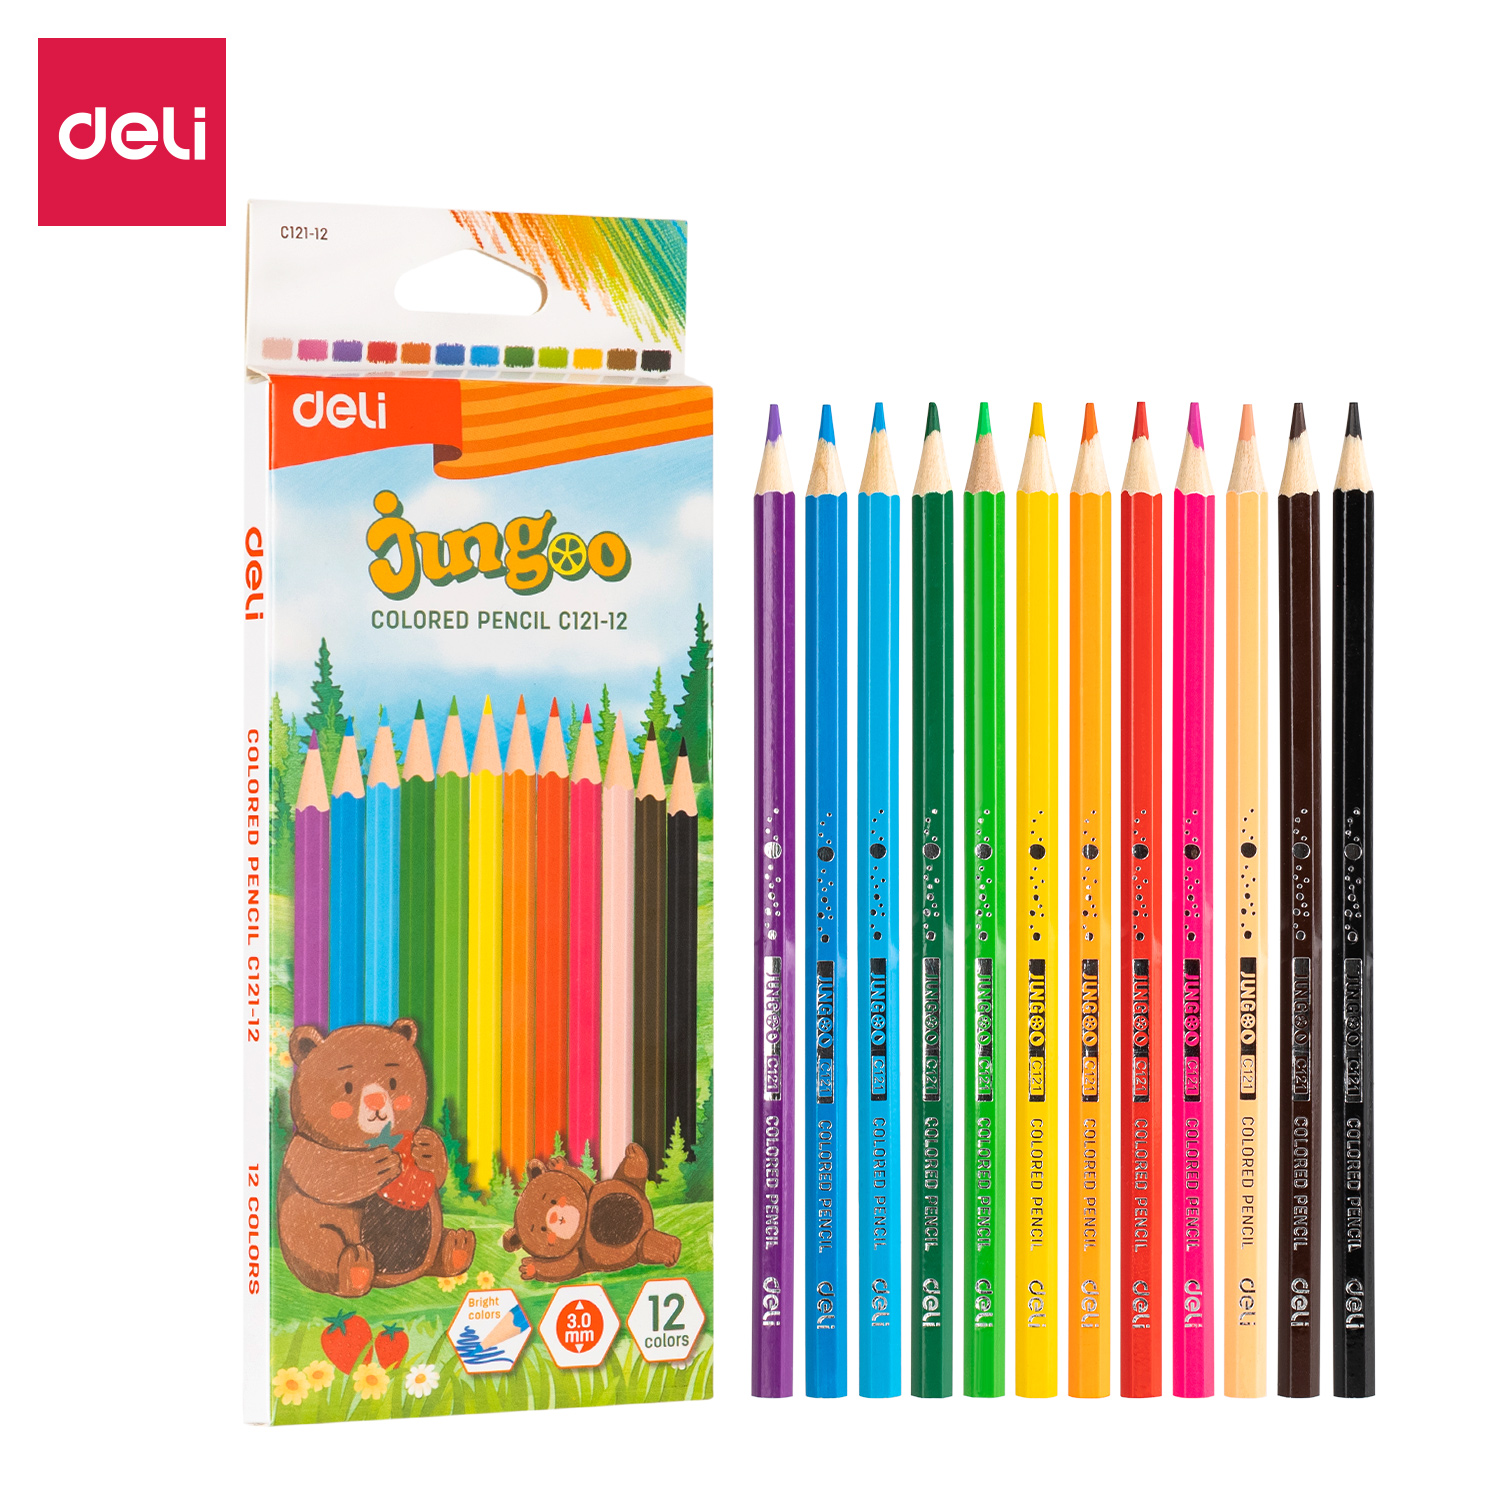 Deli-EC121-12 Colored Pencil